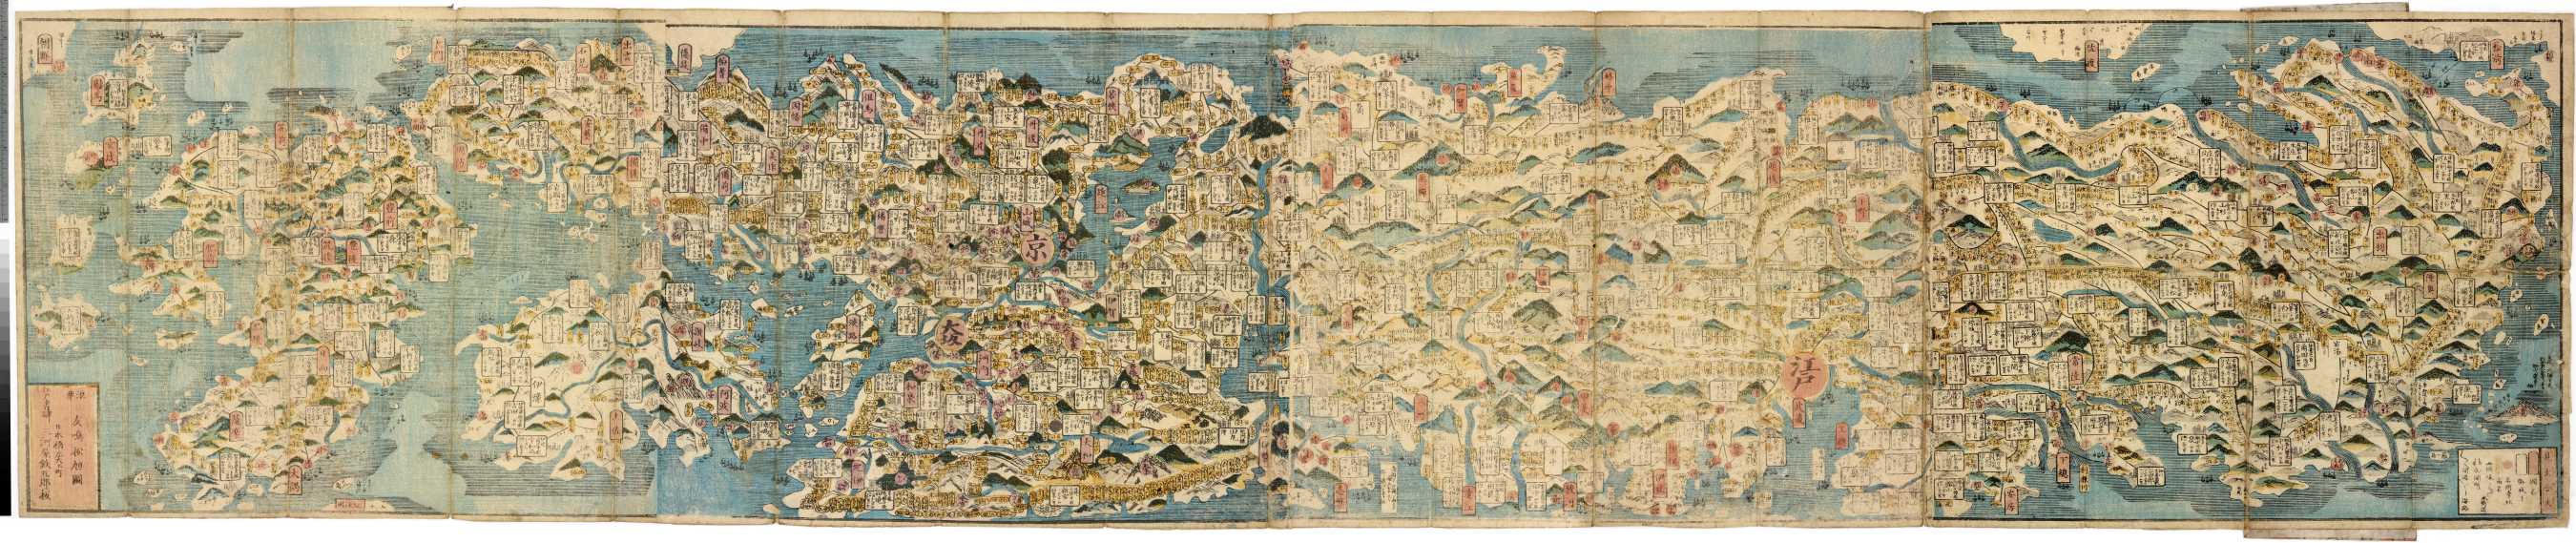 04.03 日本全国道中絵図 (Illustrated Travellers' Map of All Japan)